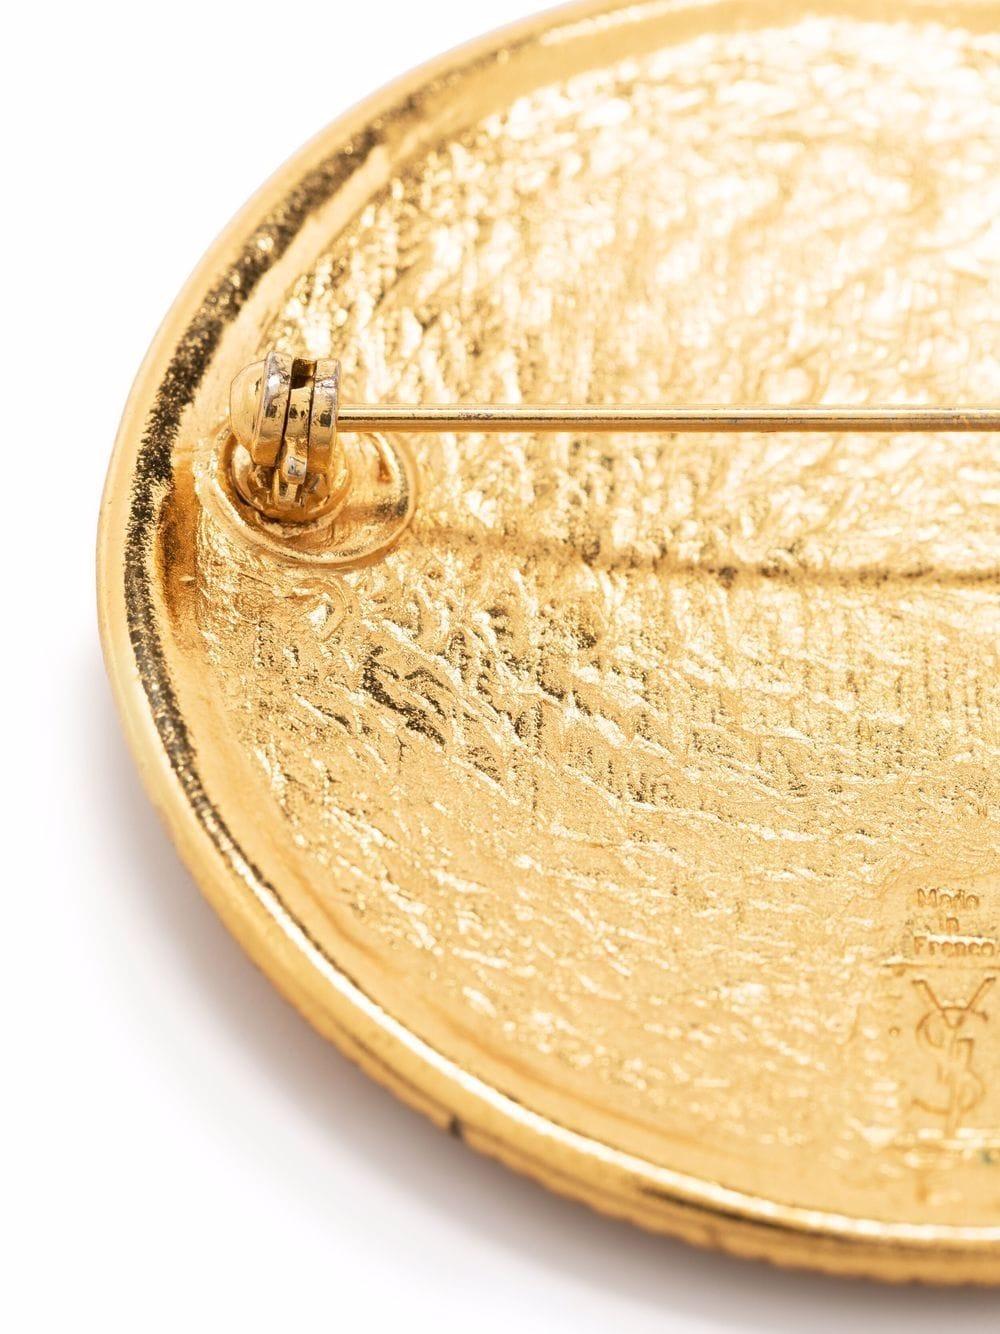  Broche à logo Yves Saint Laurent des années 1990, en métal doré, avec un logo YSL décoratif,  une épingle de sûreté arrière. 
Diamètre : 4,5 cm (1,7in.)
En bon état vintage.  Fabriqué en France. 
Nous garantissons que vous recevrez cet article